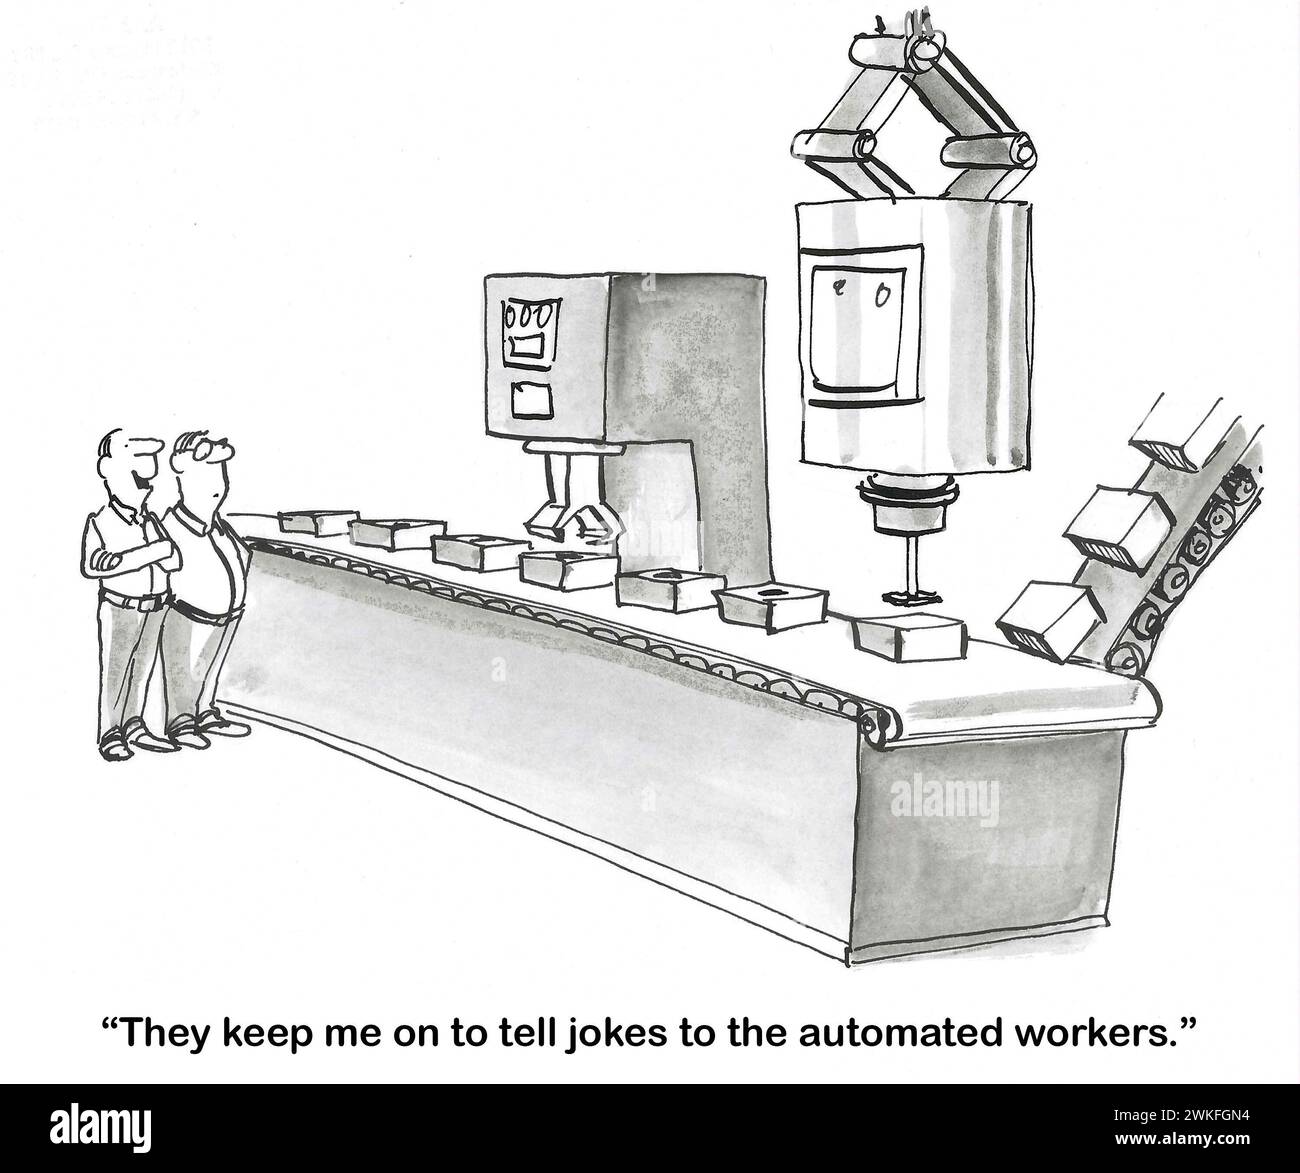 BW-Karikatur eines männlichen Menschen, der einem Freund eines Fabrikarbeiters erzählt, dass das Unternehmen ihn dazu bringt, „den automatisierten Arbeitern Witze zu erzählen“. Stockfoto